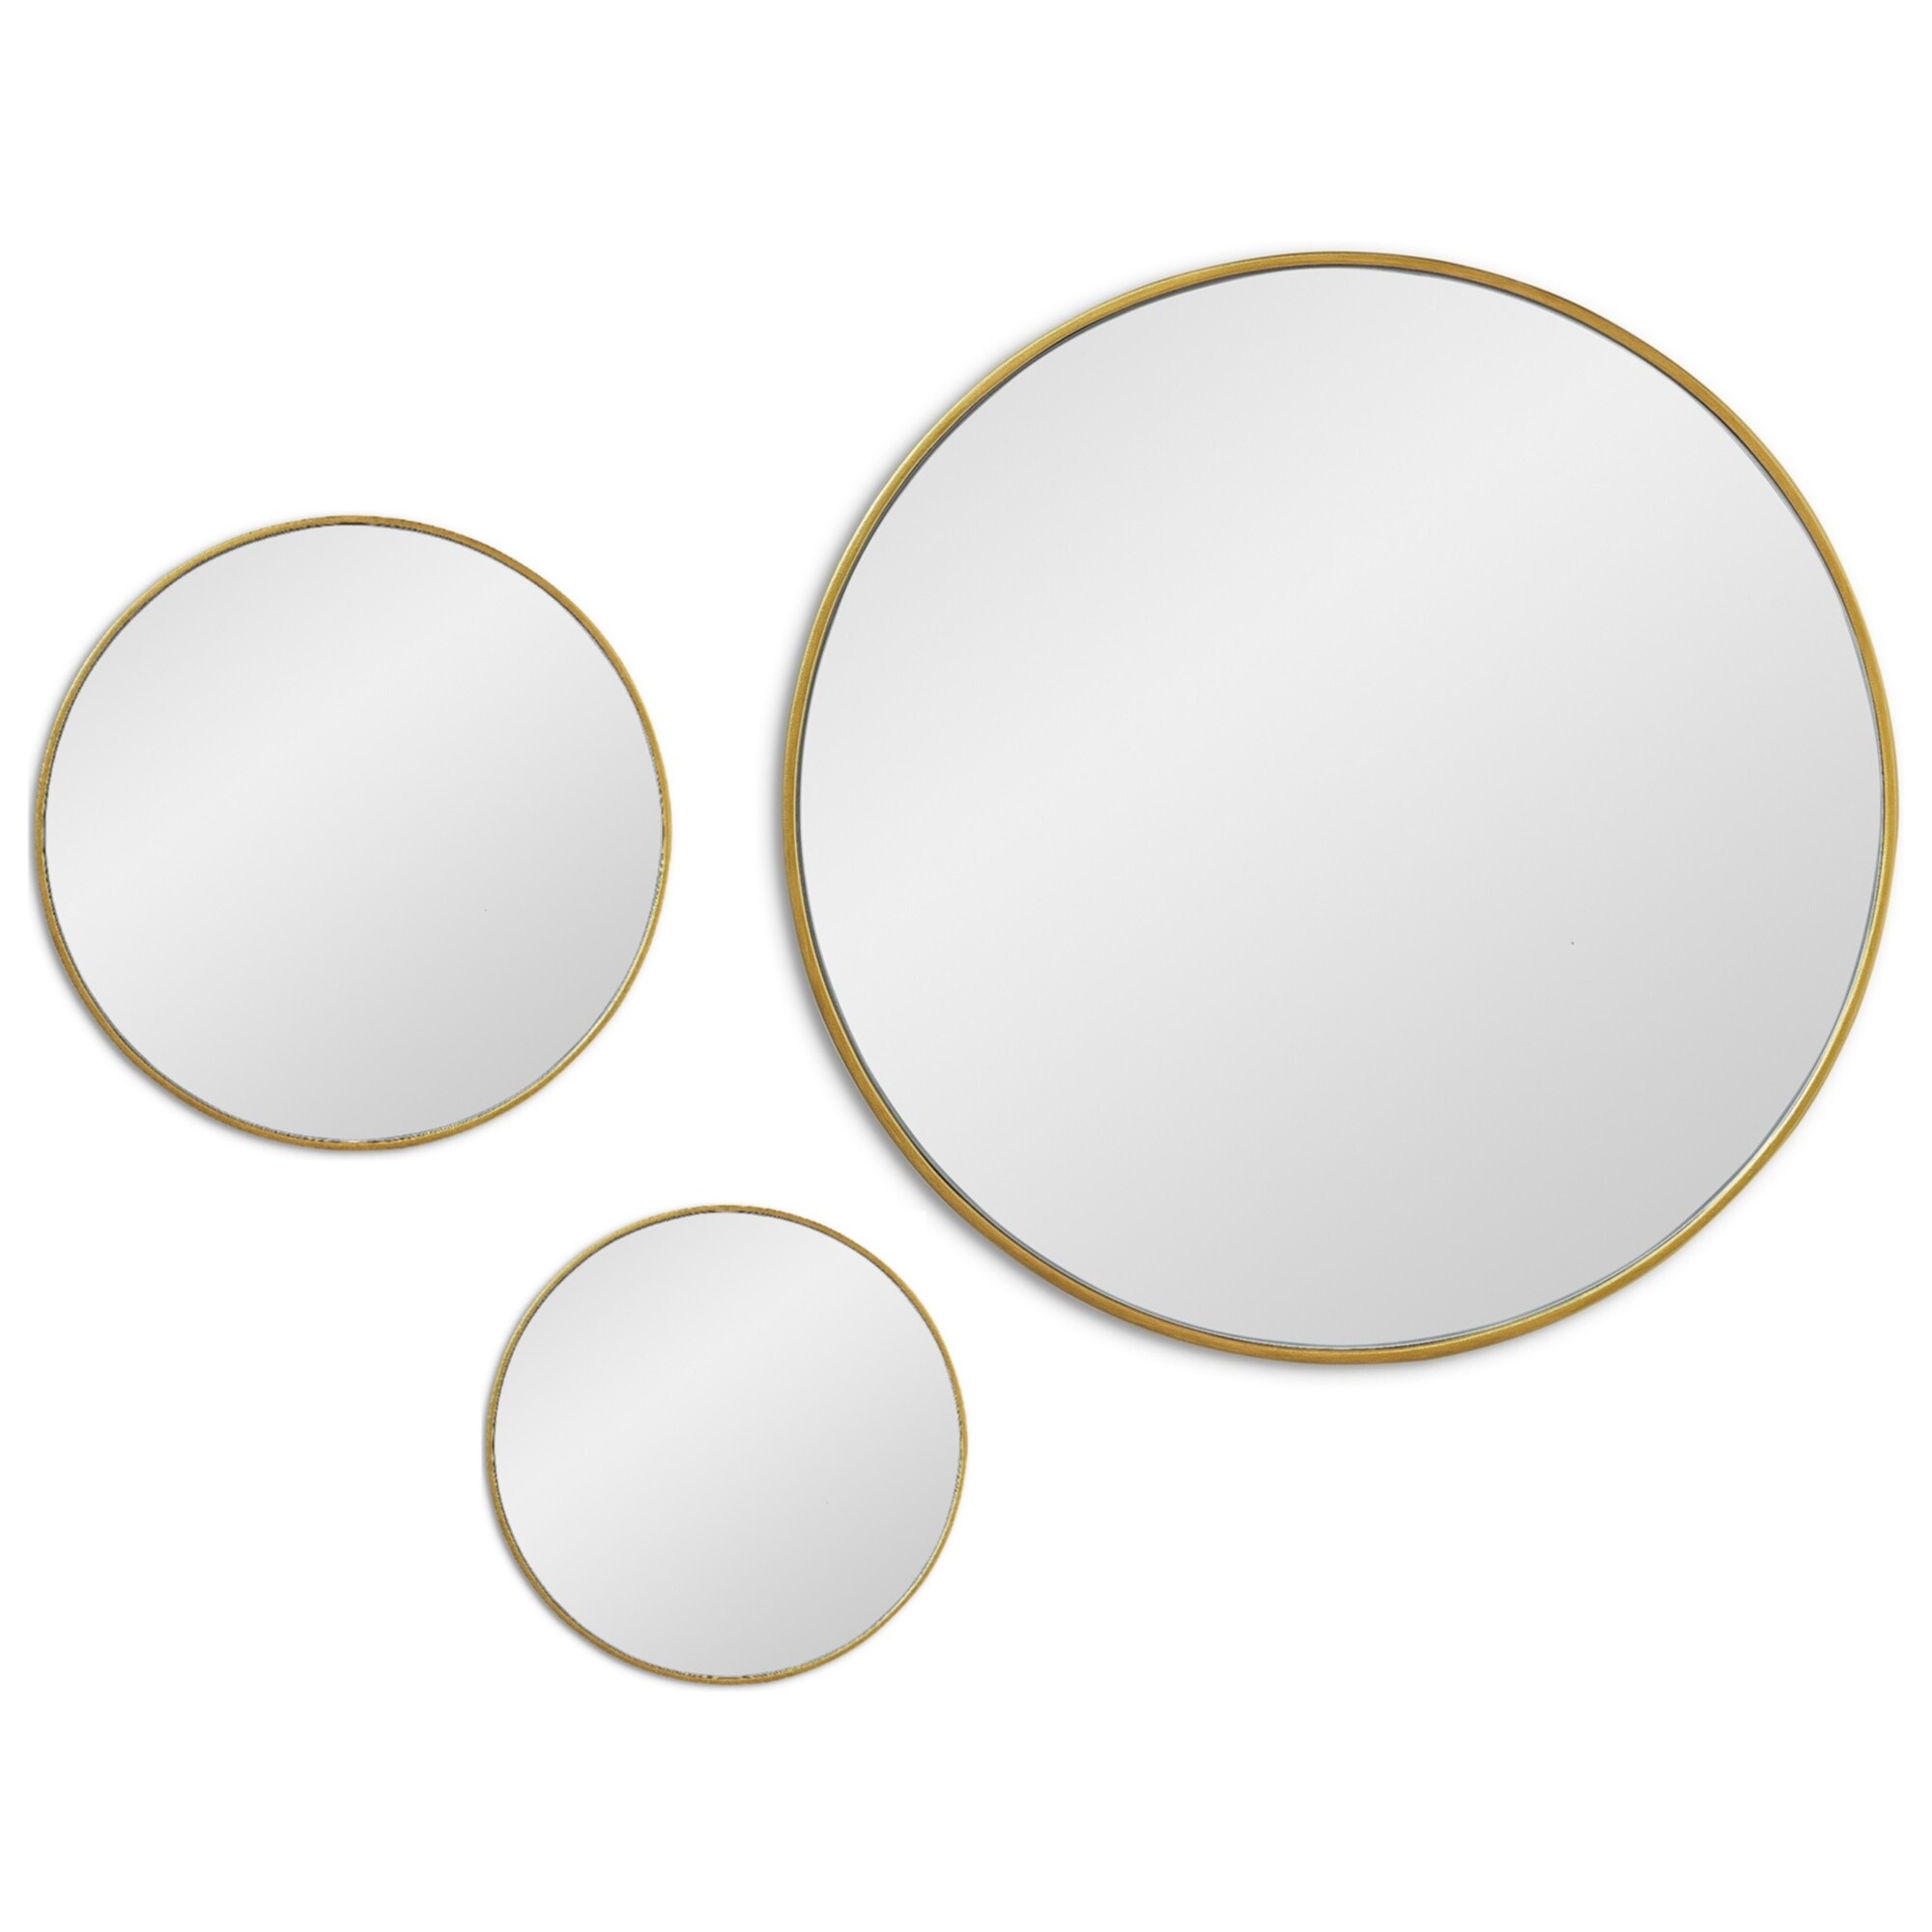 Зеркала настенные круглые в тонкой раме 3 шт золото Jupiter Gold